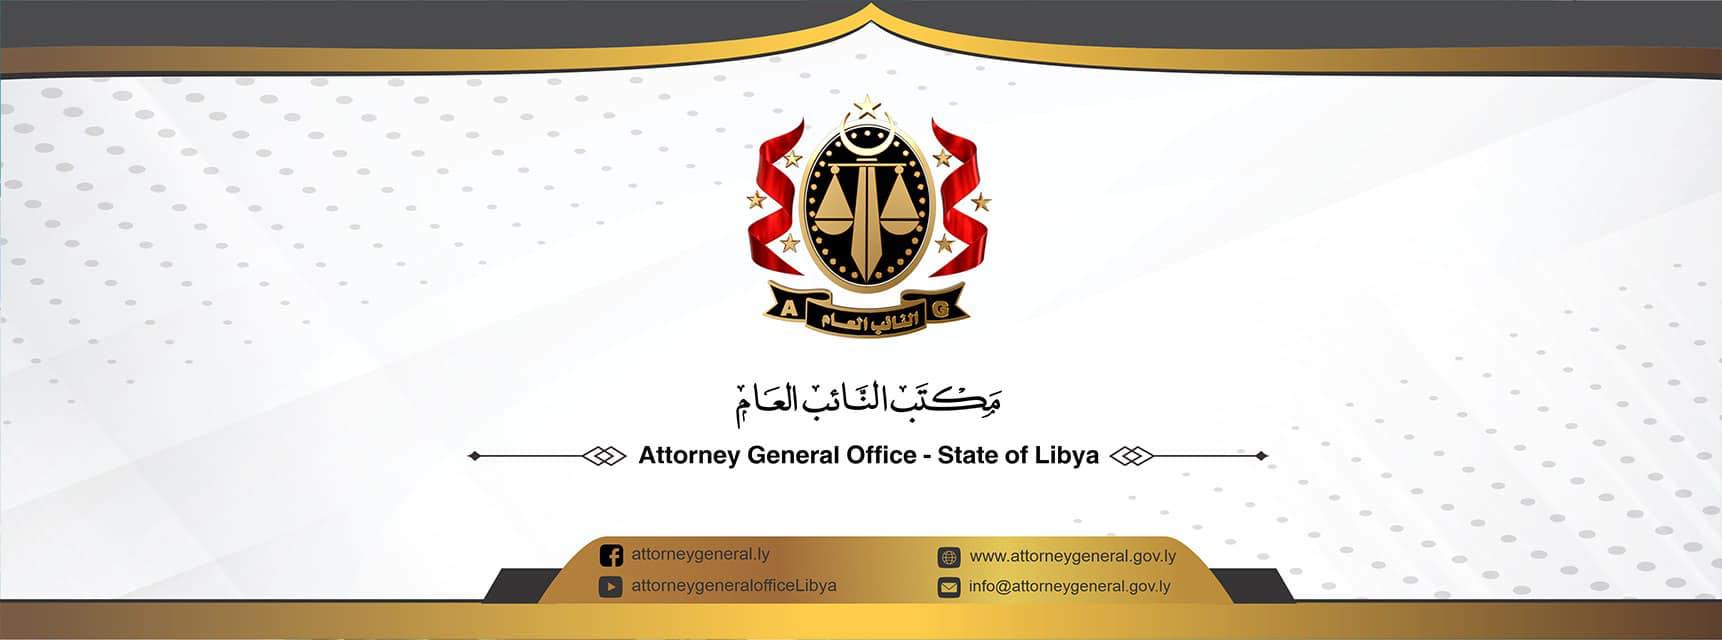 محكمة جنايات طرابلس تصدر حكماً يقضي بإدانة مسئولين سابقين في وزارة الصحة .